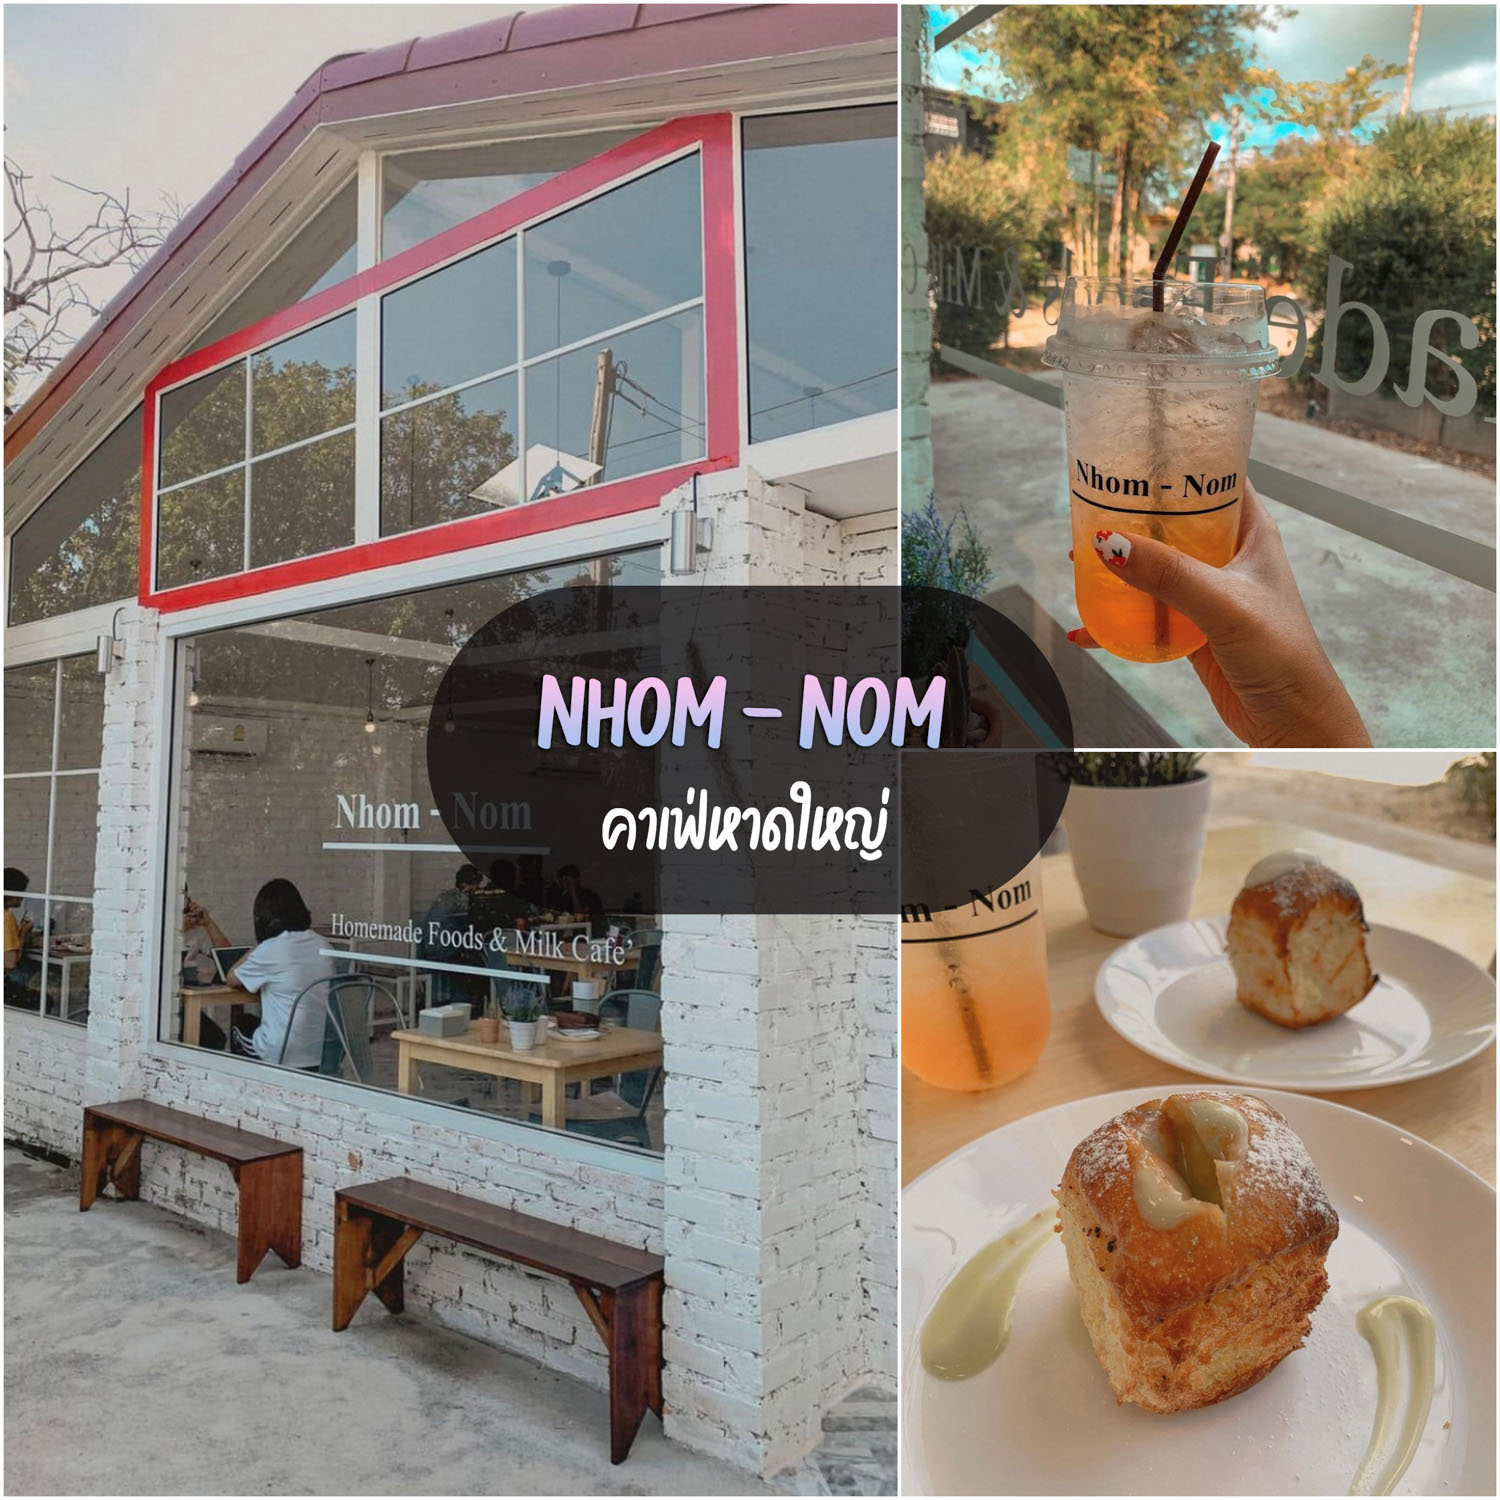 Nhom-nom คาเฟ่หาดใหญ่ ร้านลับแต่ไม่ลับ ชิวๆเค้กอร่อย กาแฟดี ราคาไม่แพงพลาดไม่ได้แล้ว